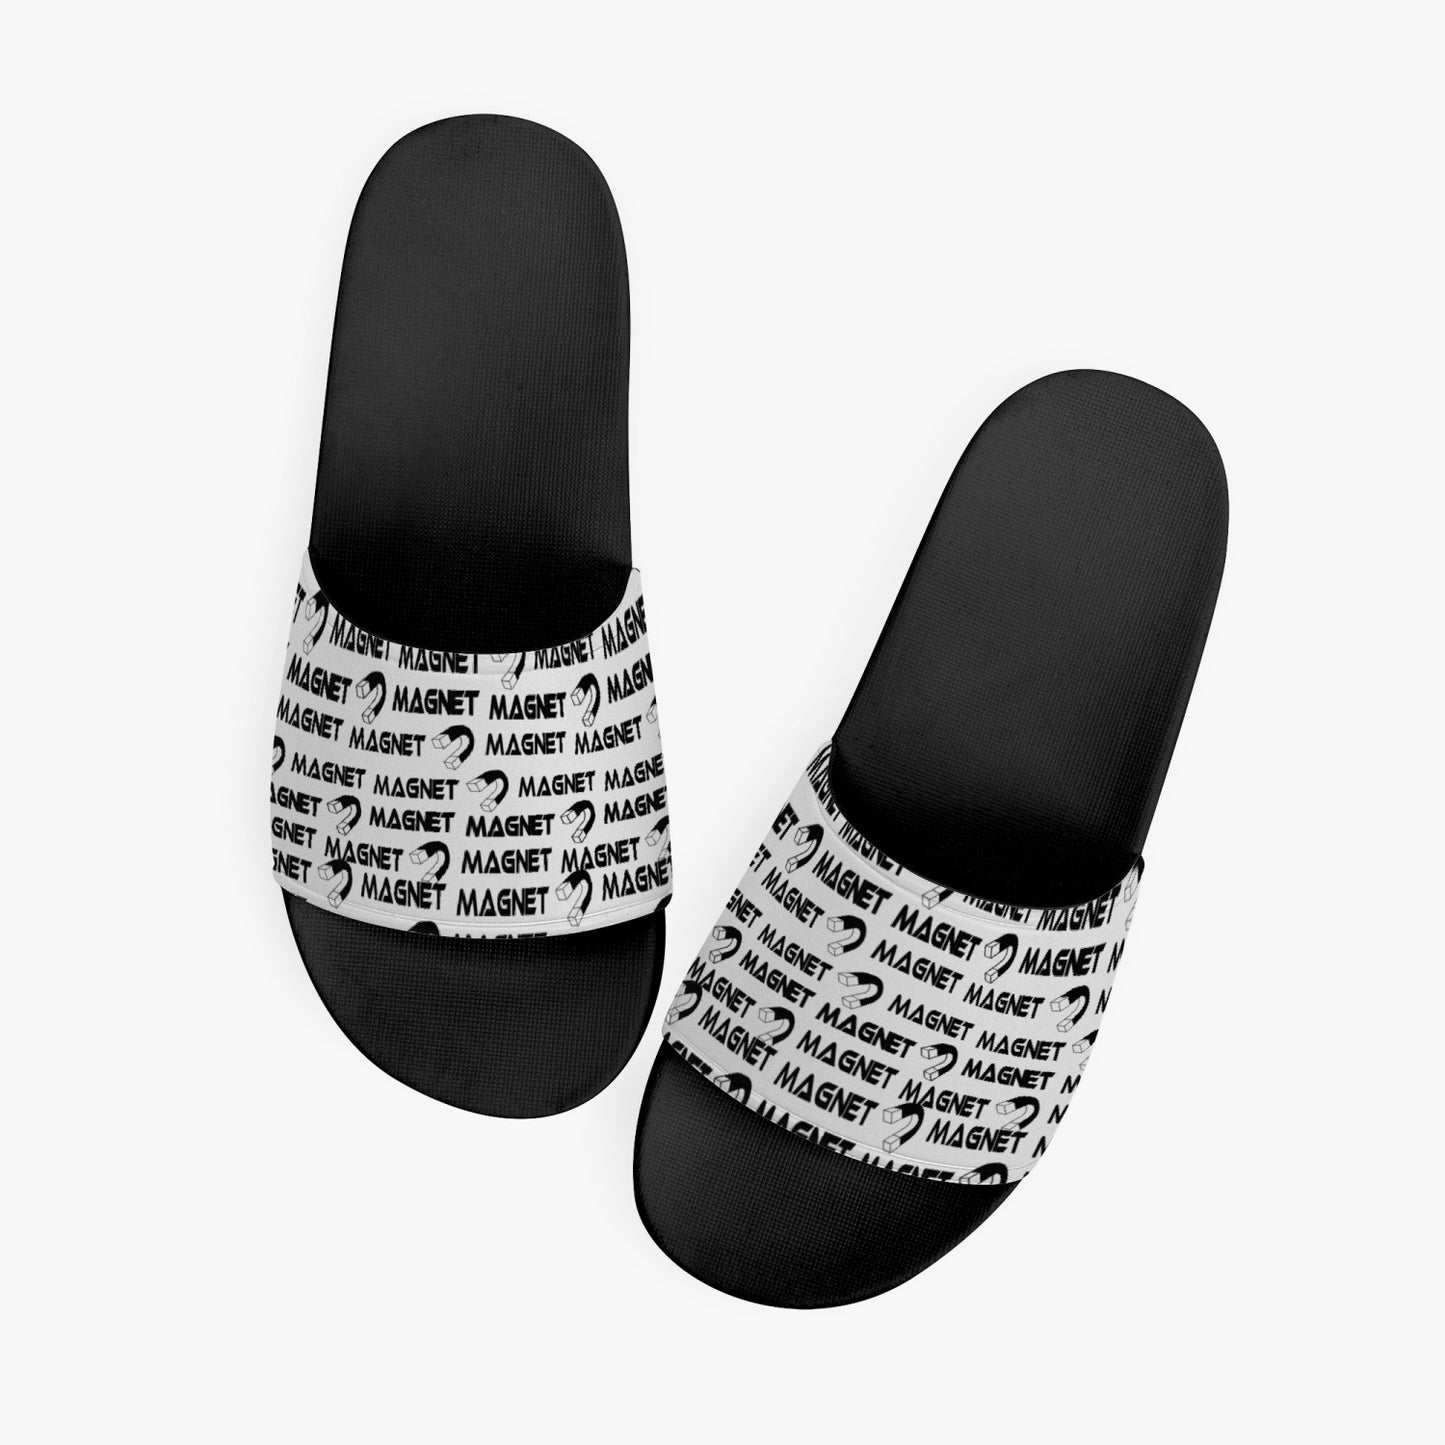 Magnet affirmation Sandals - Black